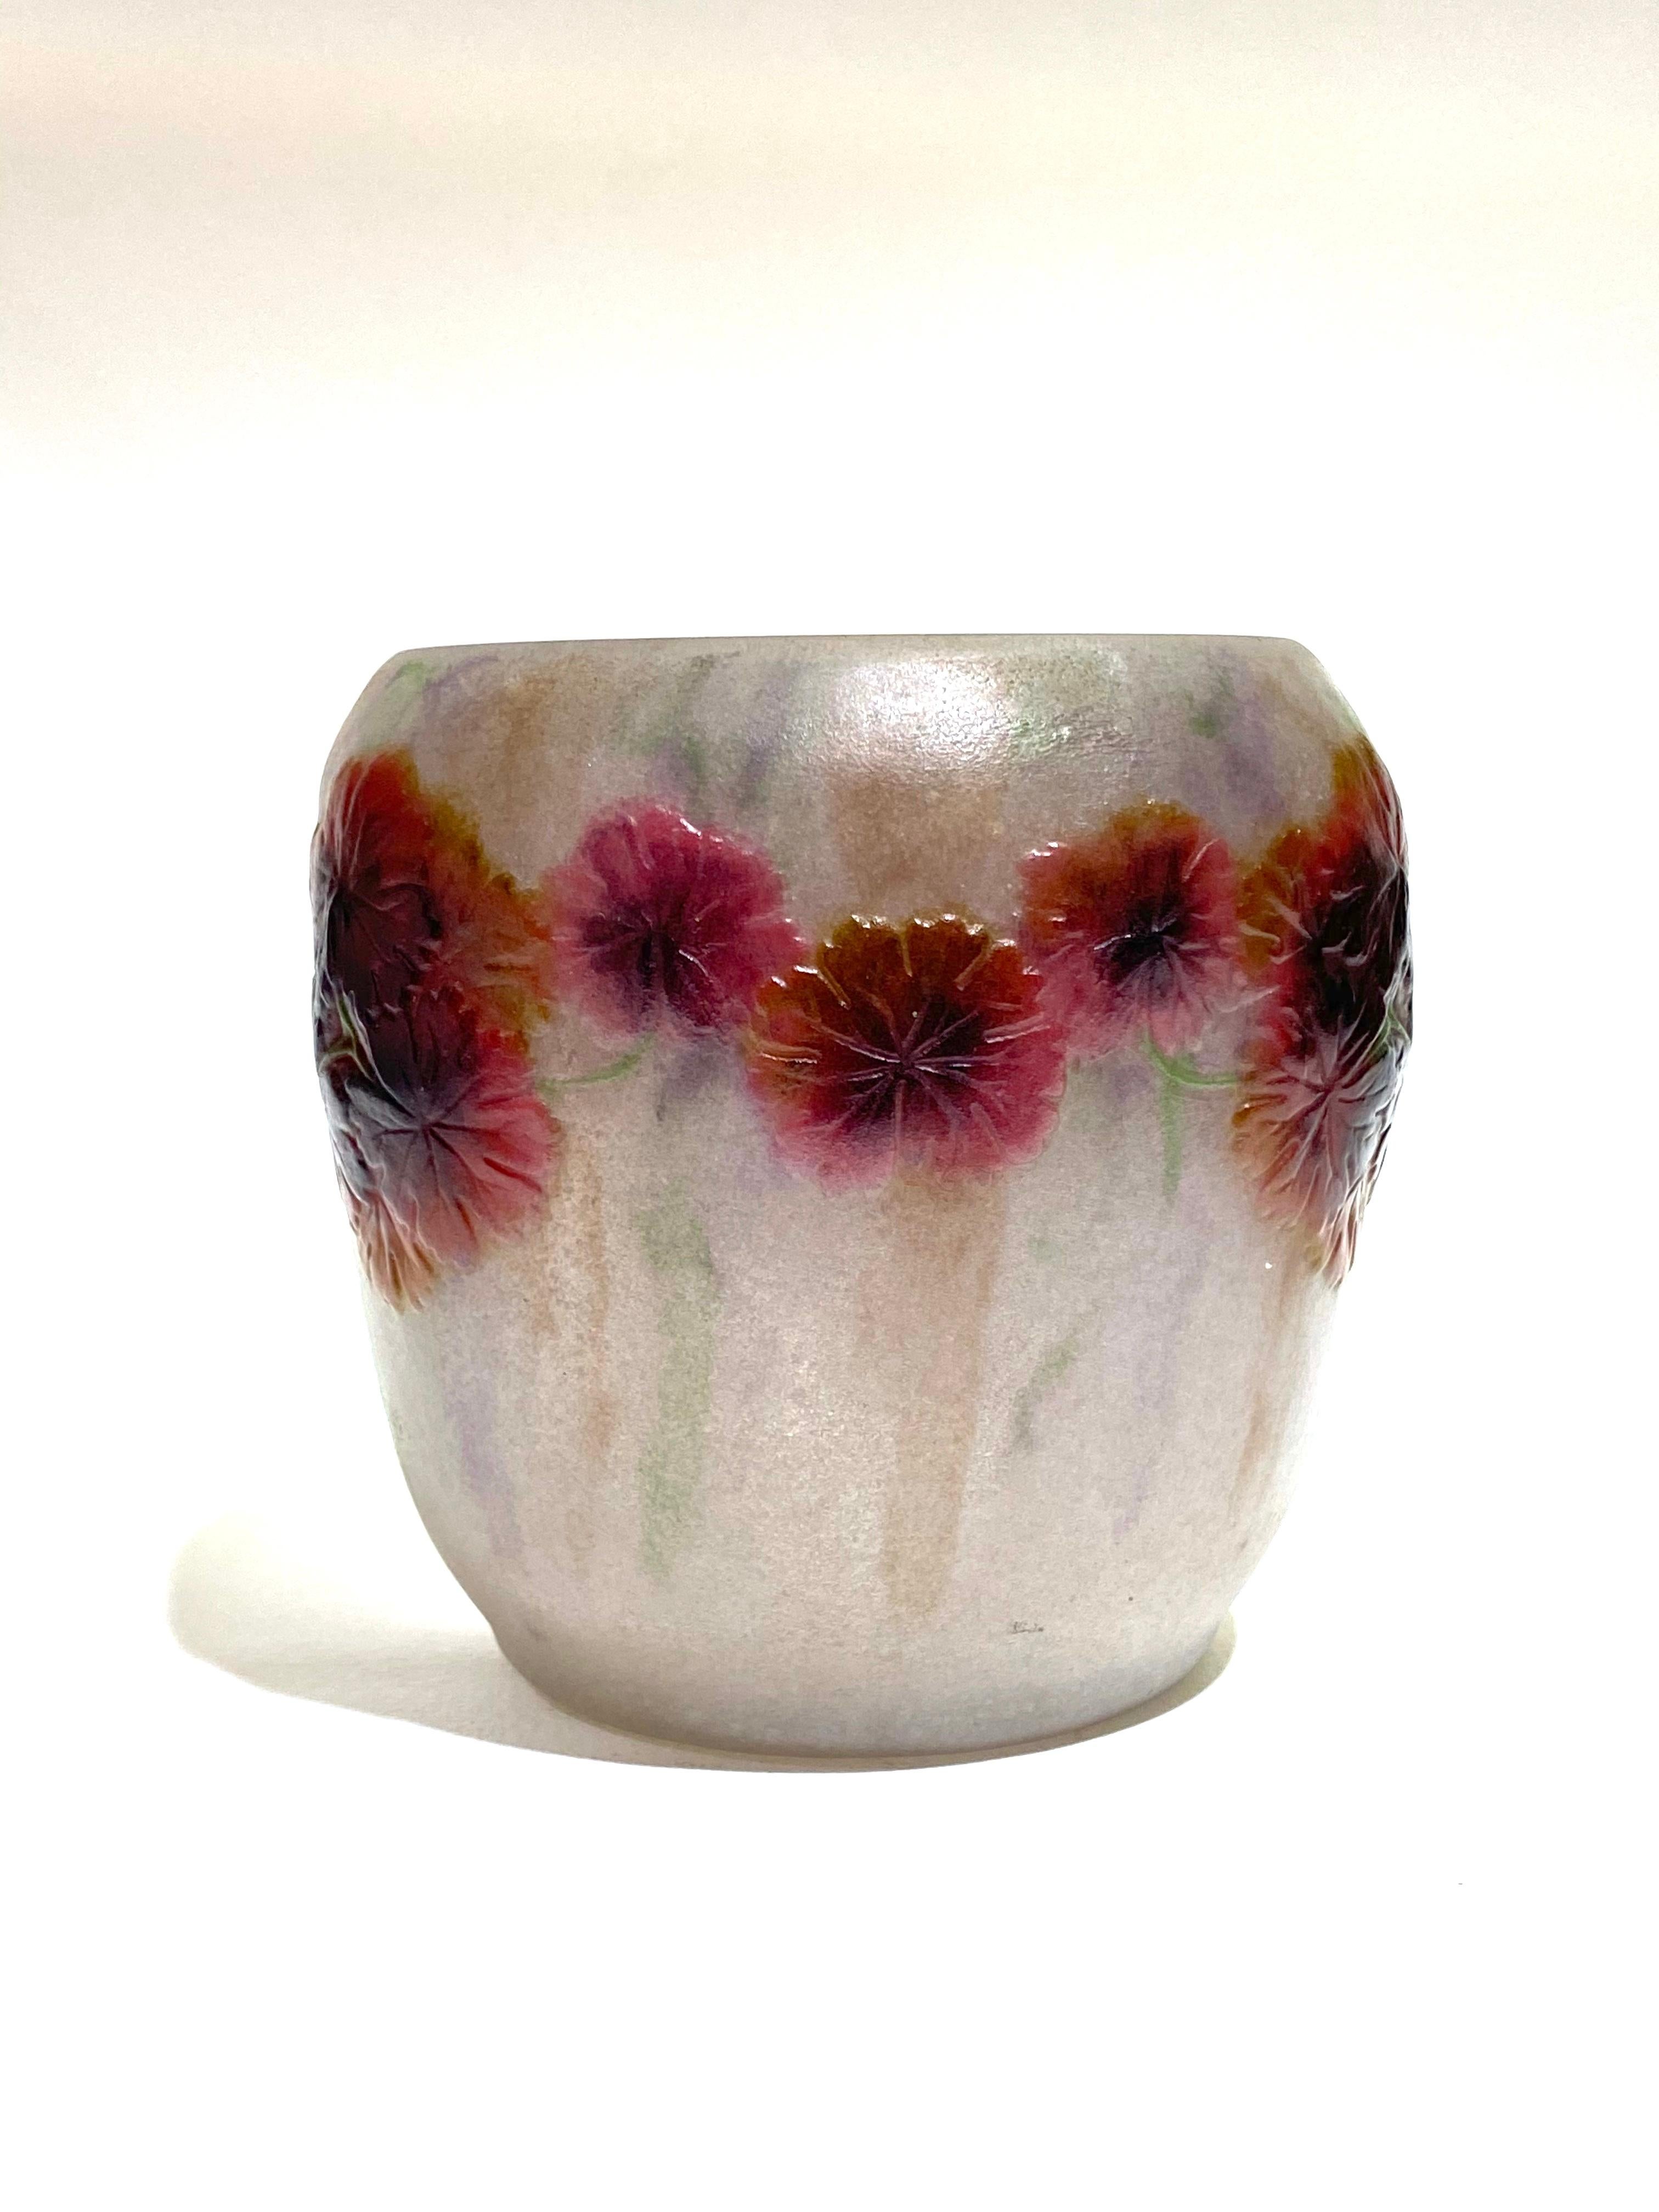 Molded 1917 Gabriel Argy-Rousseau Geranium Sauvage Vase in Pate de Verre Cameo Glass